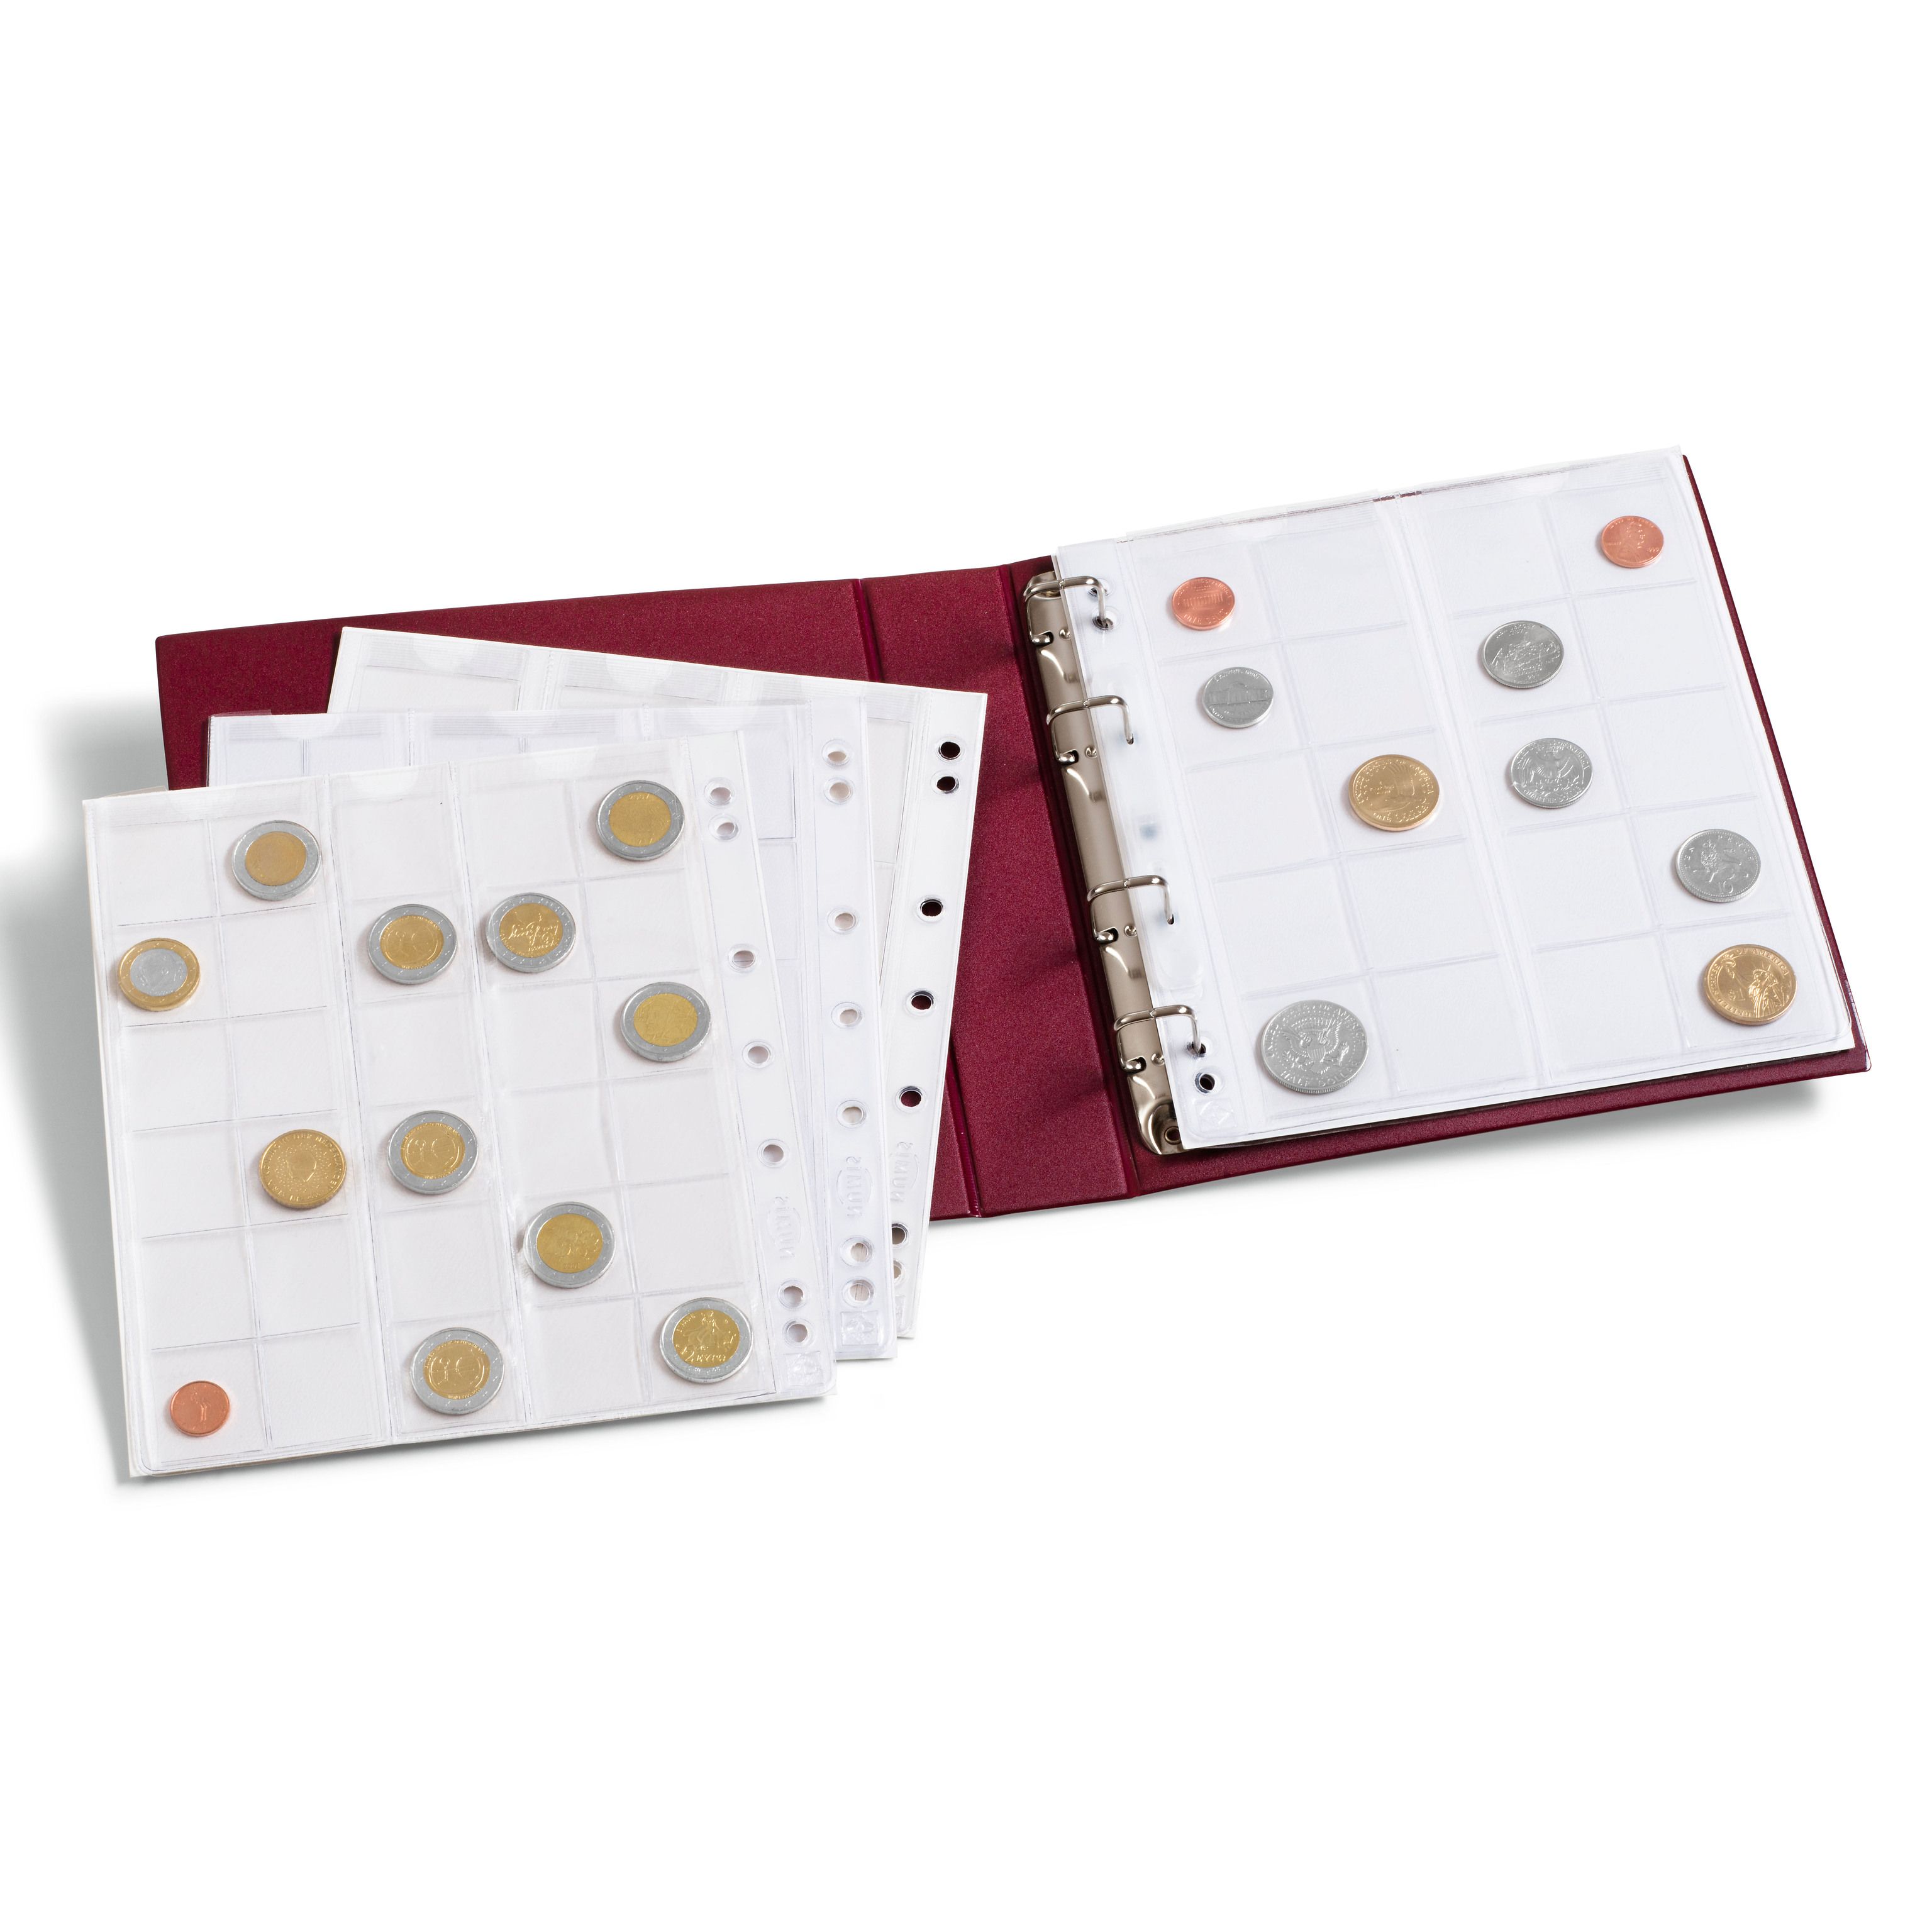 Альбом для монет с 5 листами, формат "Numis", Красный, LEUCHTTURM, 310704 — Фото №2